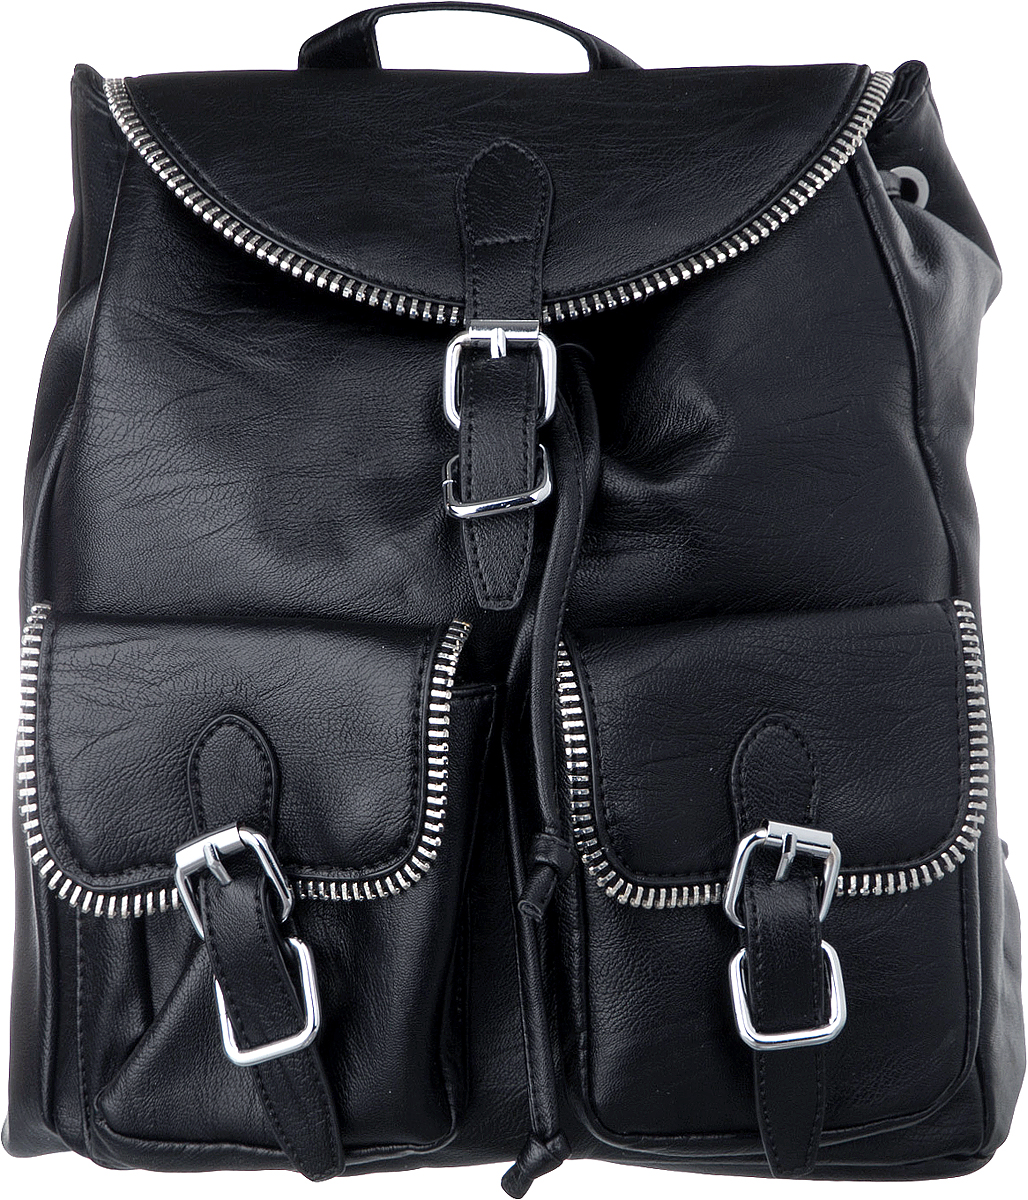 Рюкзак женский Vitacci, цвет: черный. BG04005-1